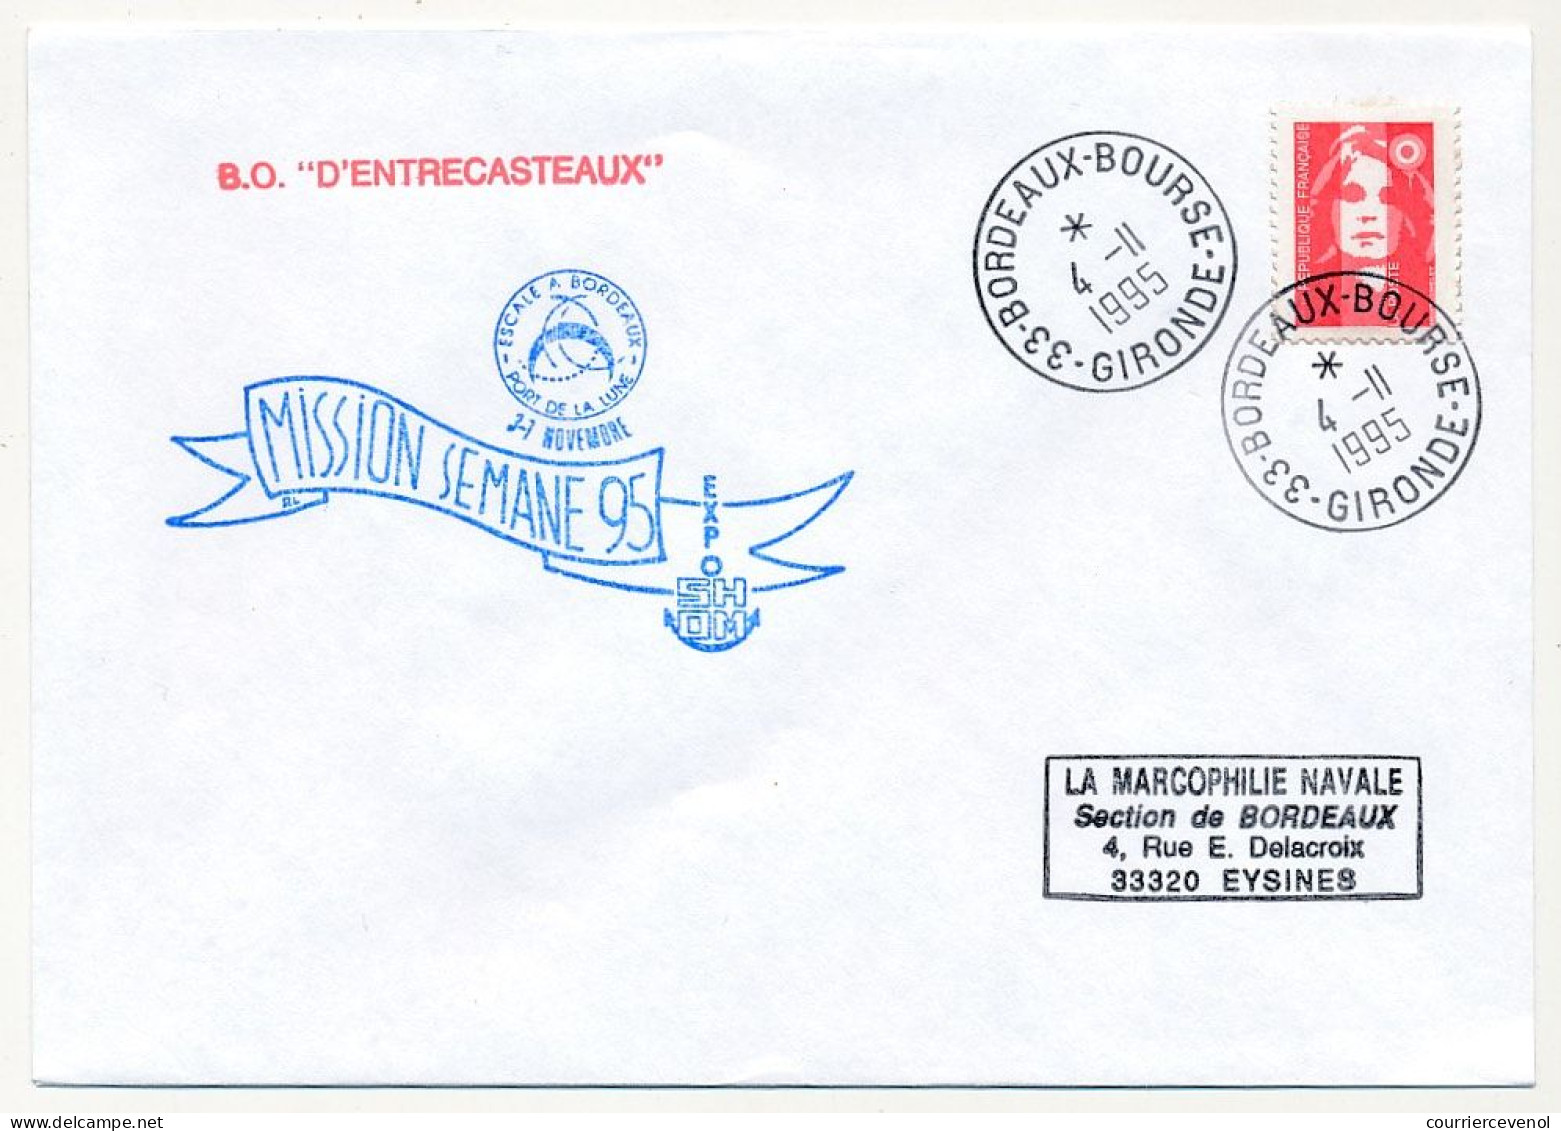 FRANCE - Env. Aff. Briat Cad 33 Bordeaux Bourse 4/11/1995 + "Mission Semaine 95 - B.O. D'Entrecasteaux" - Naval Post